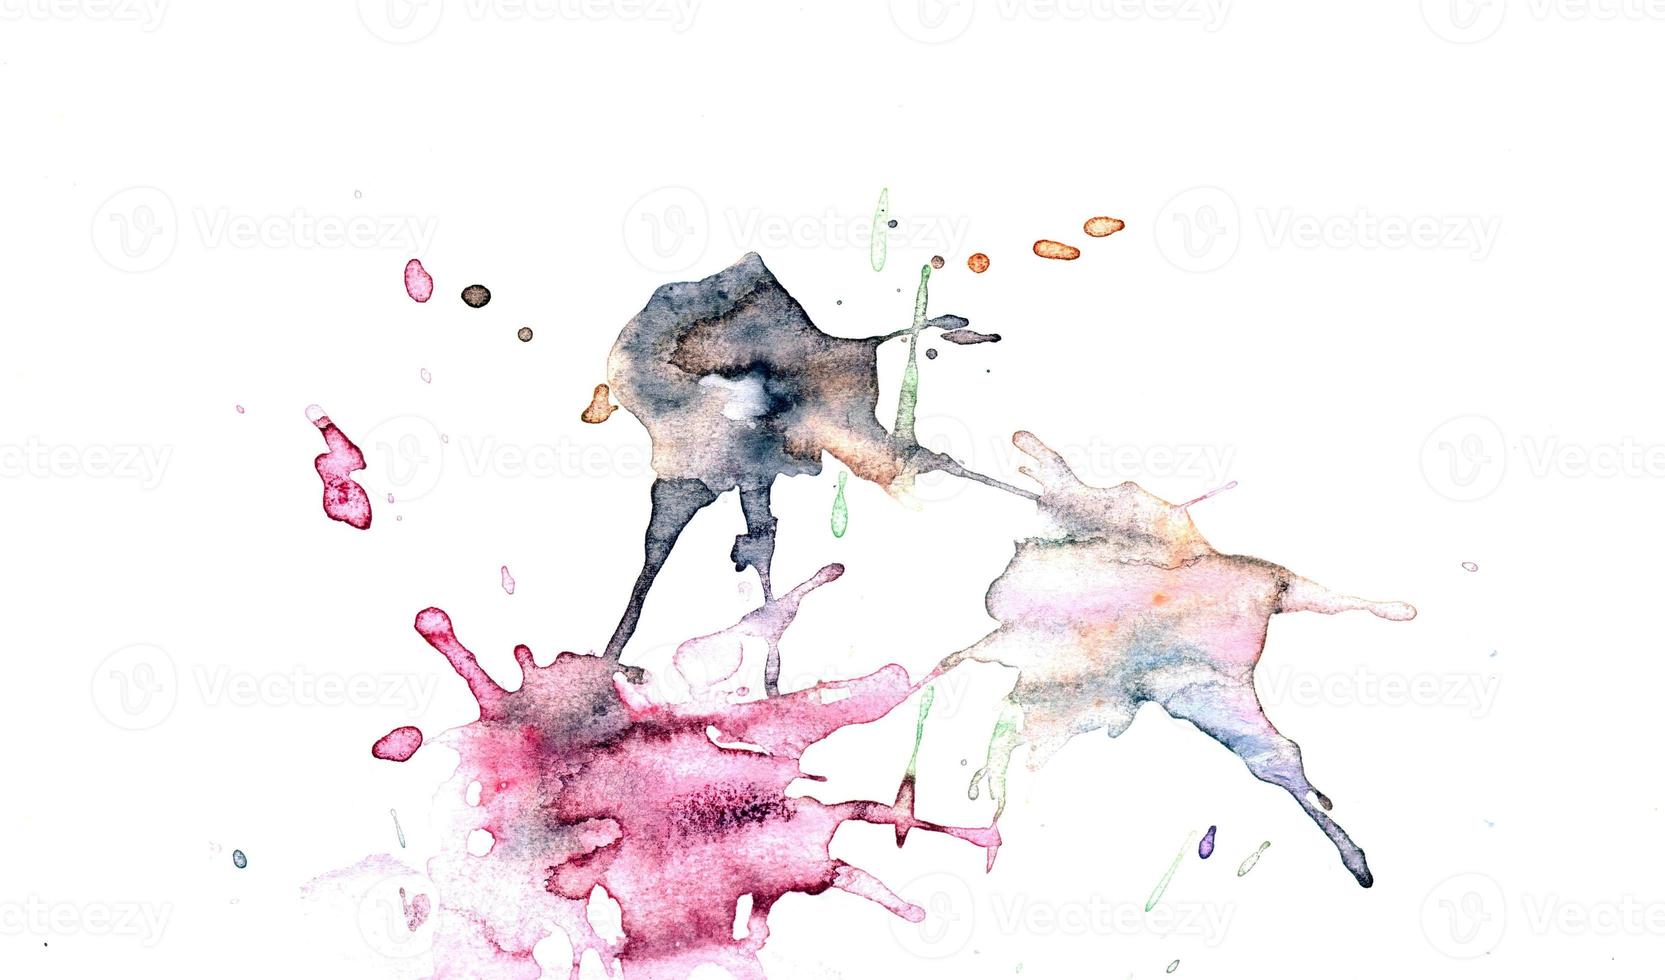 Aquarellillustrationen gezeichnete Farben auf weißem Papierhintergrund foto